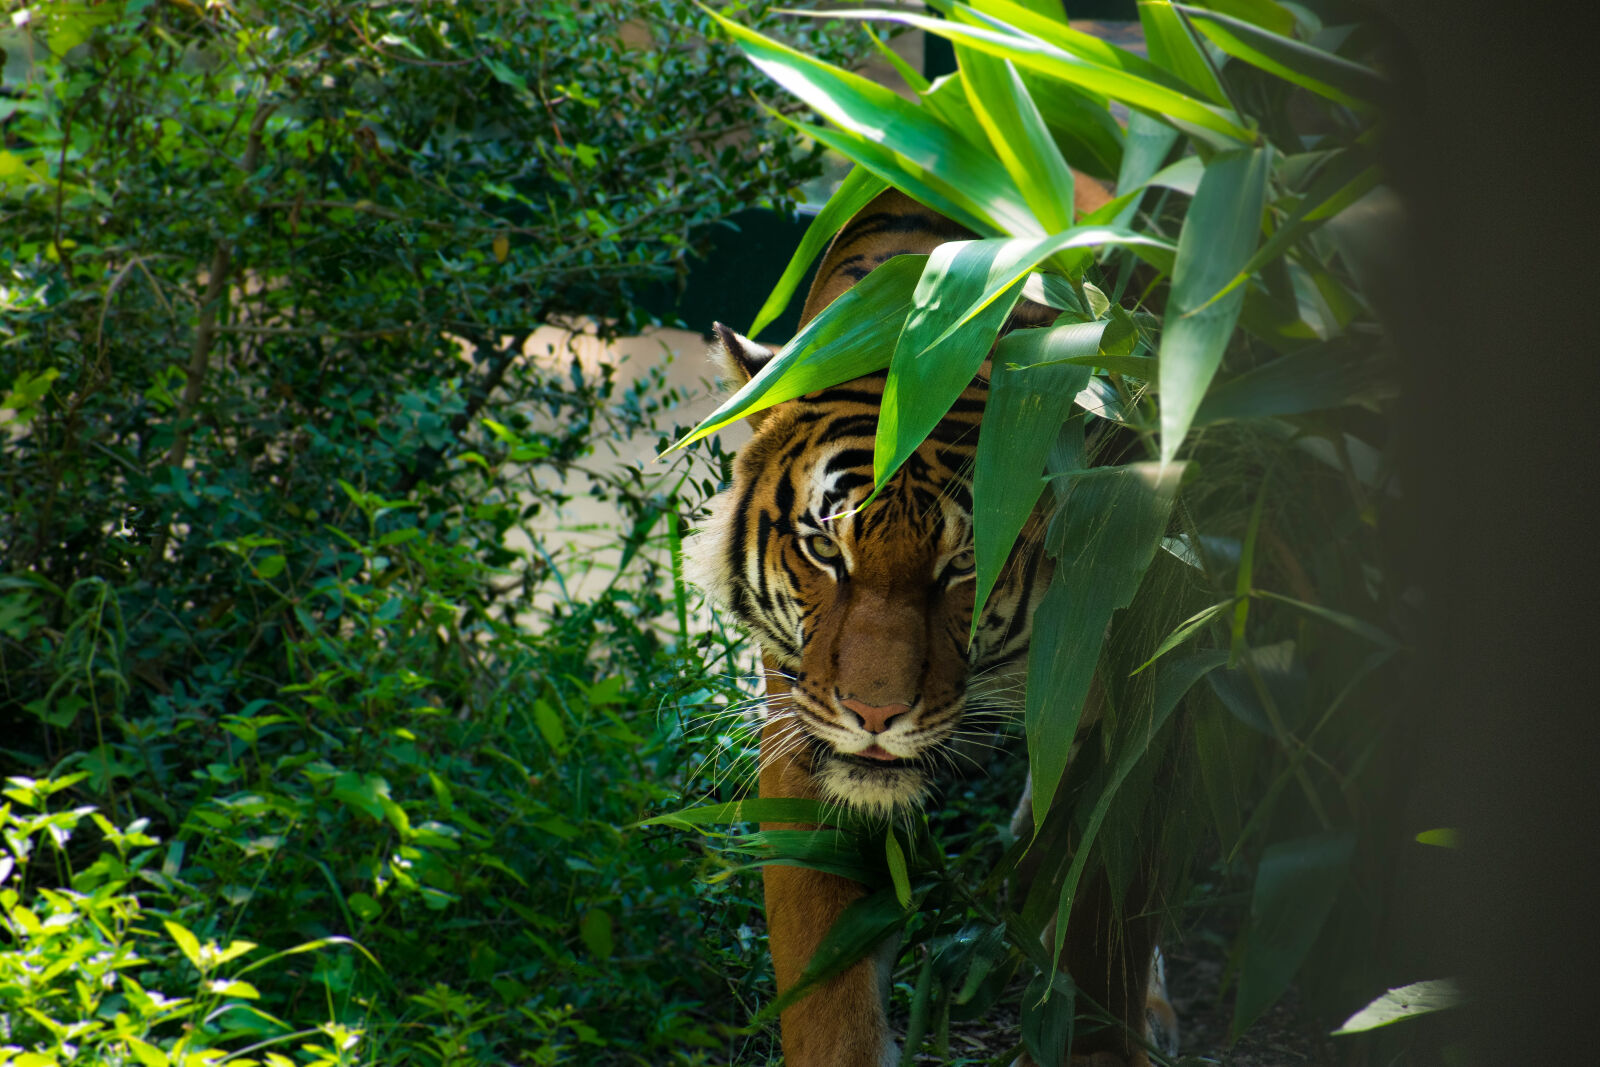 Nikon D3400 + Nikon AF-P DX Nikkor 70-300mm F4.5-6.3G sample photo. Animal, jungle, tiger, wild photography